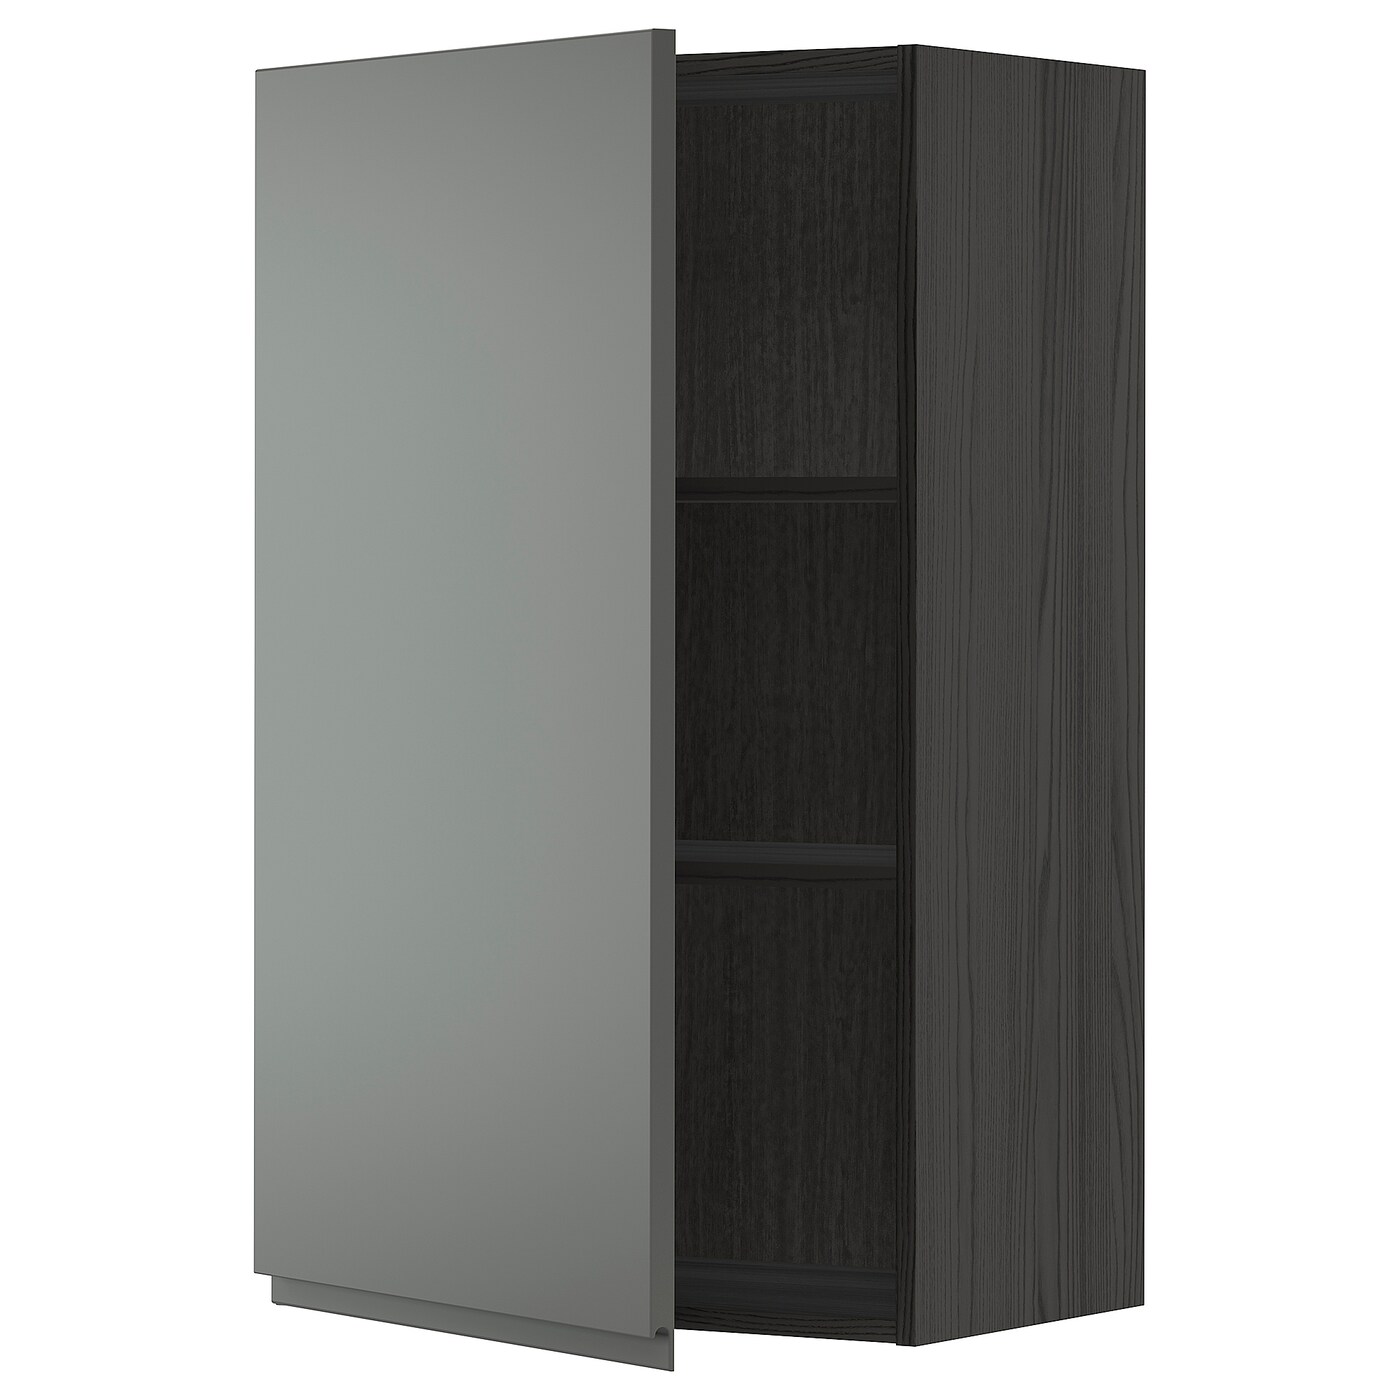 Навесной шкаф с полкой - METOD IKEA/ МЕТОД ИКЕА, 100х60 см, черный/темно-серый